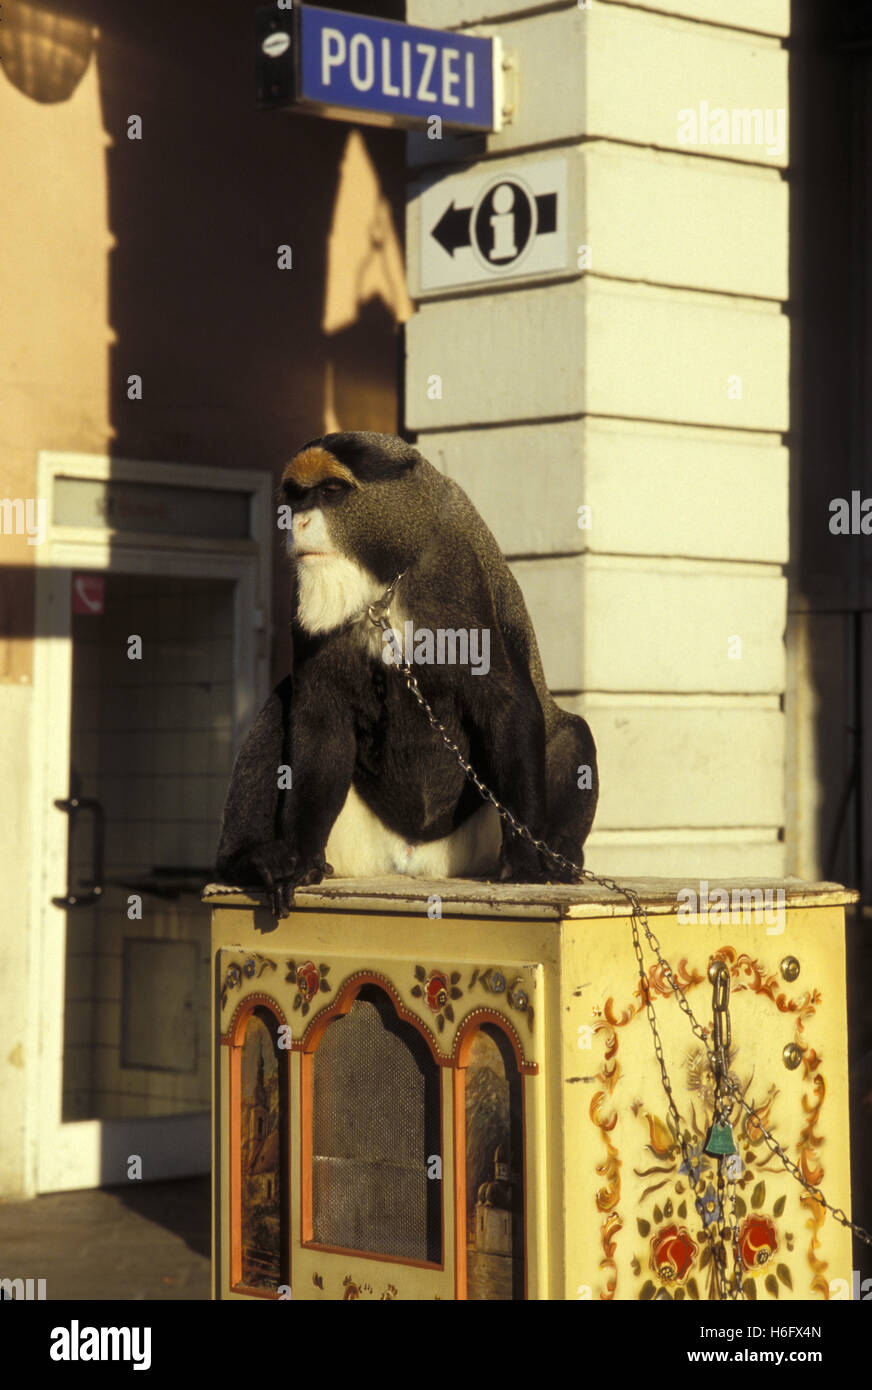 Allemagne, Trèves, De Brazza's Monkey (lat. Cercopithecus neglectus) sur l'orgue. Banque D'Images